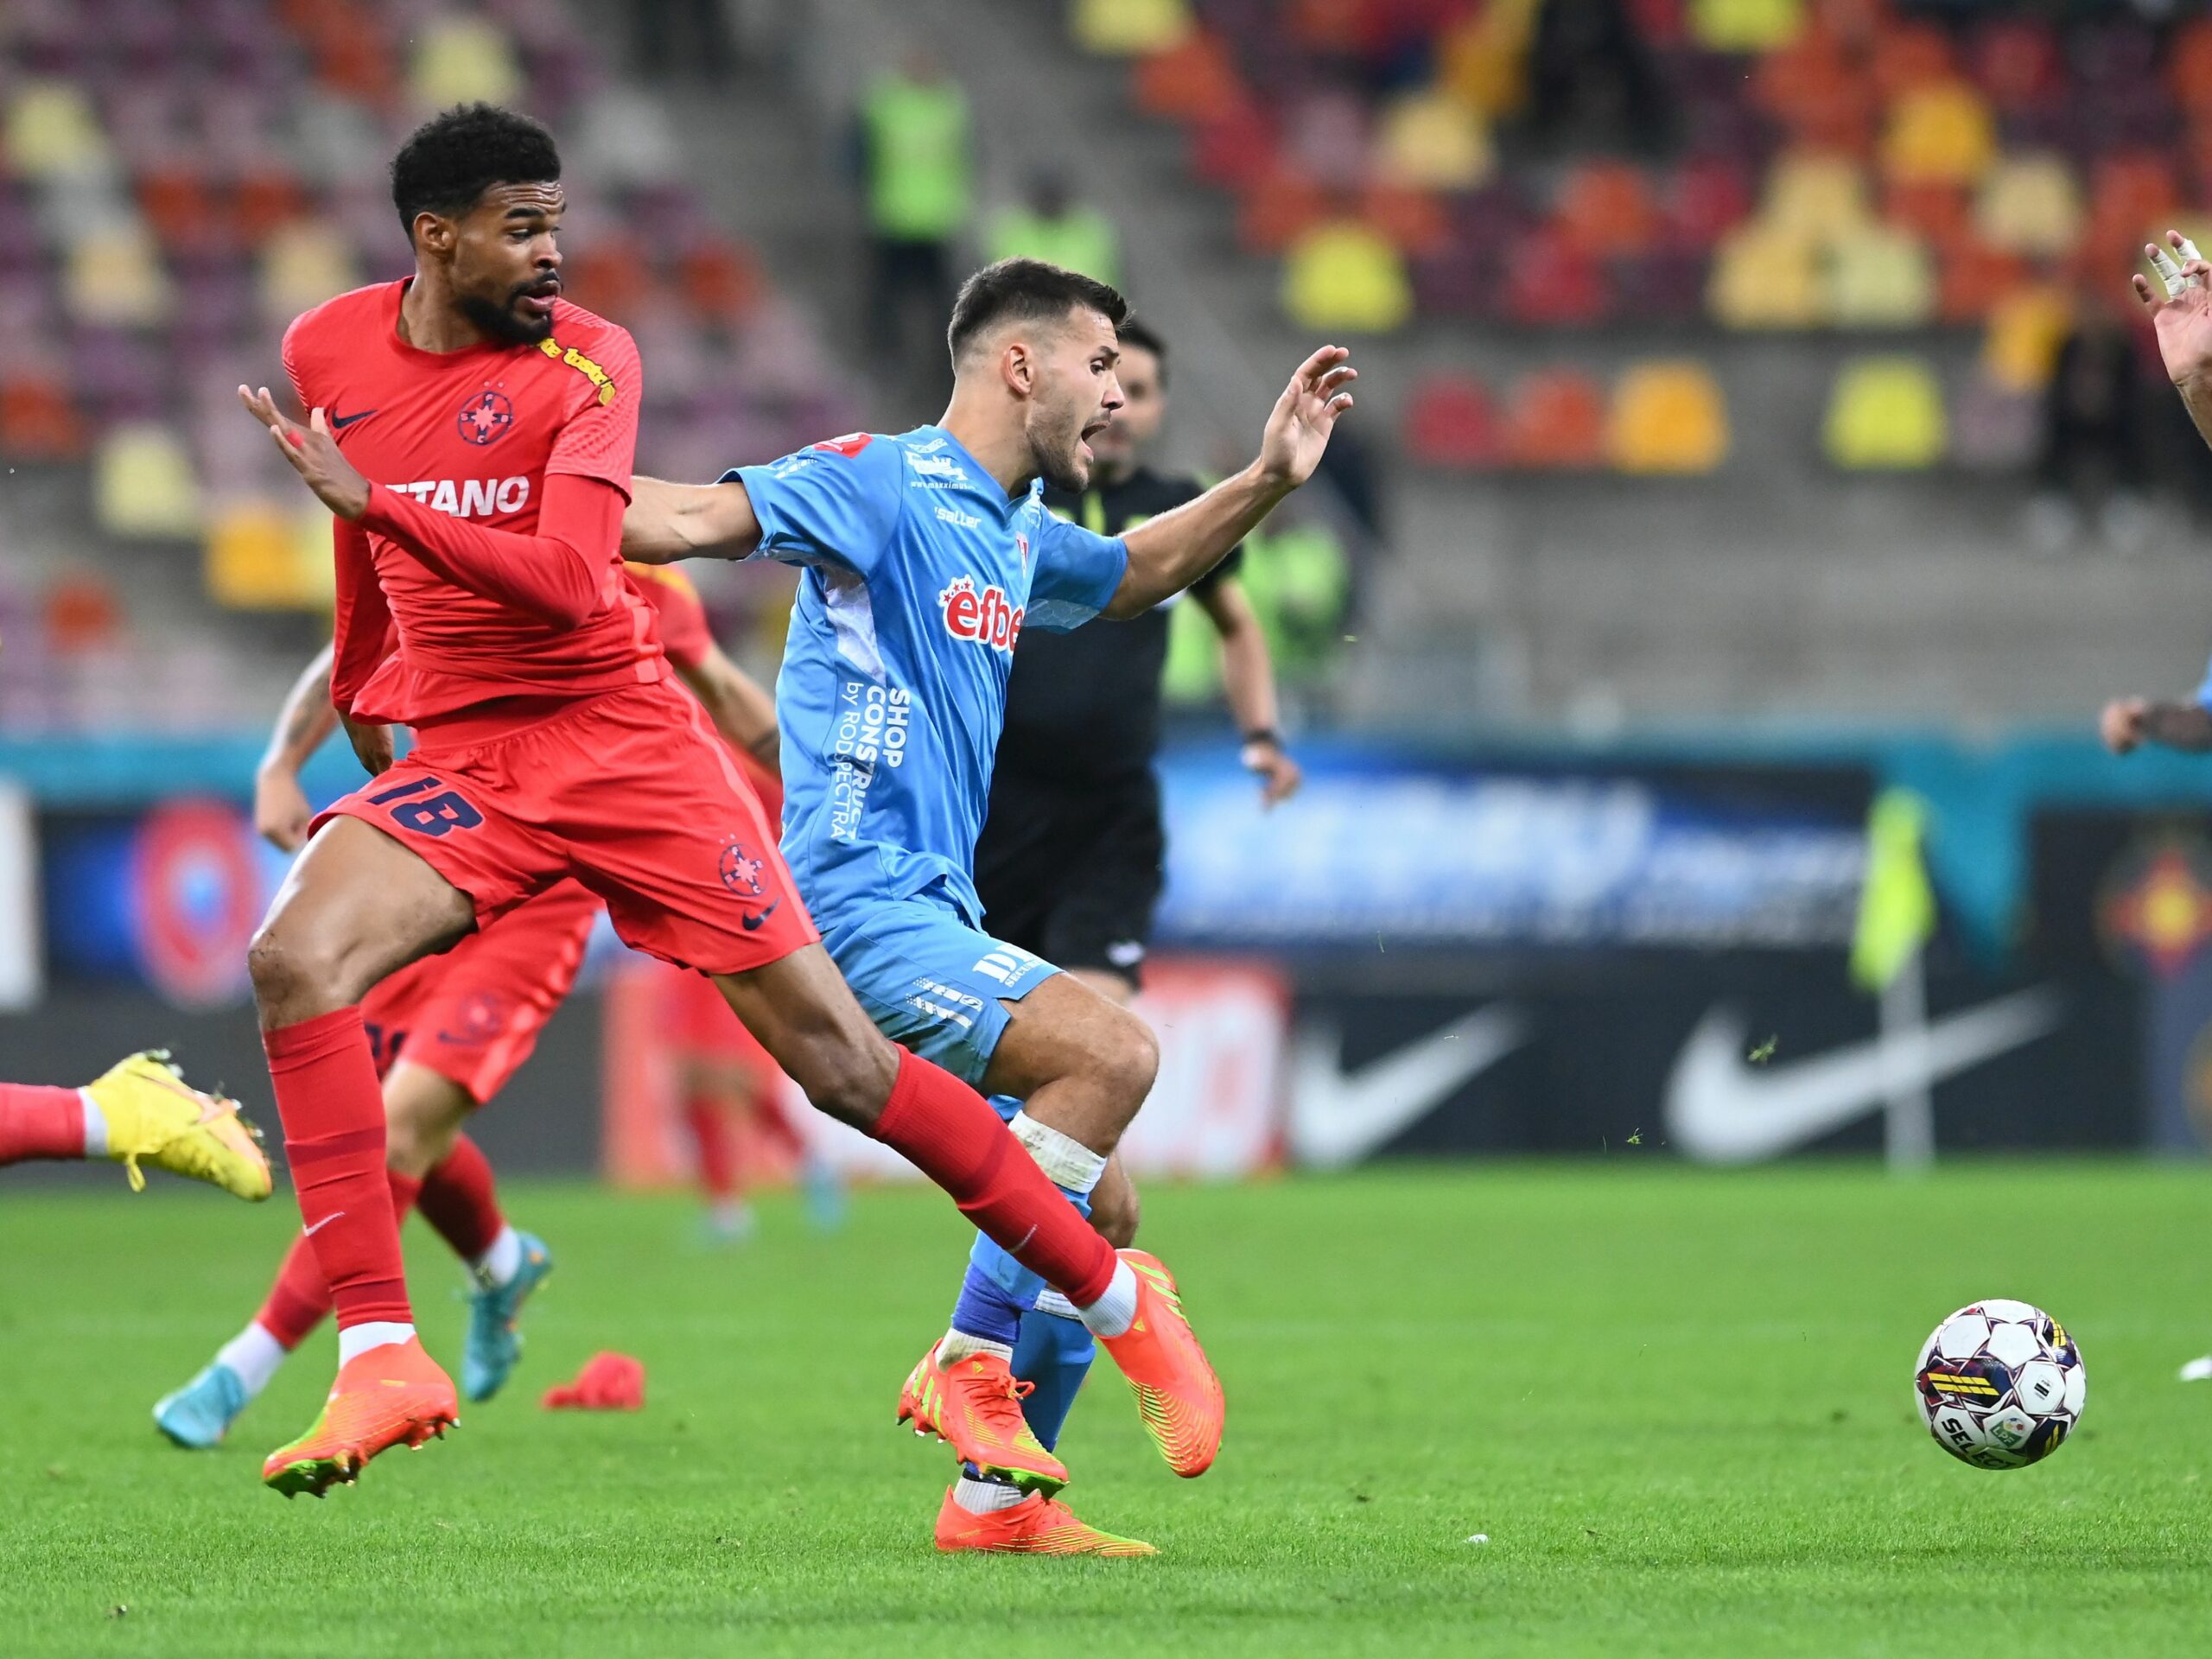 FC Botoşani – FCSB 2-3. Echipa lui Strizu a ajuns la 3 victorii consecutive. Tamm, Compagno şi Edjouma au marcat golurile victoriei